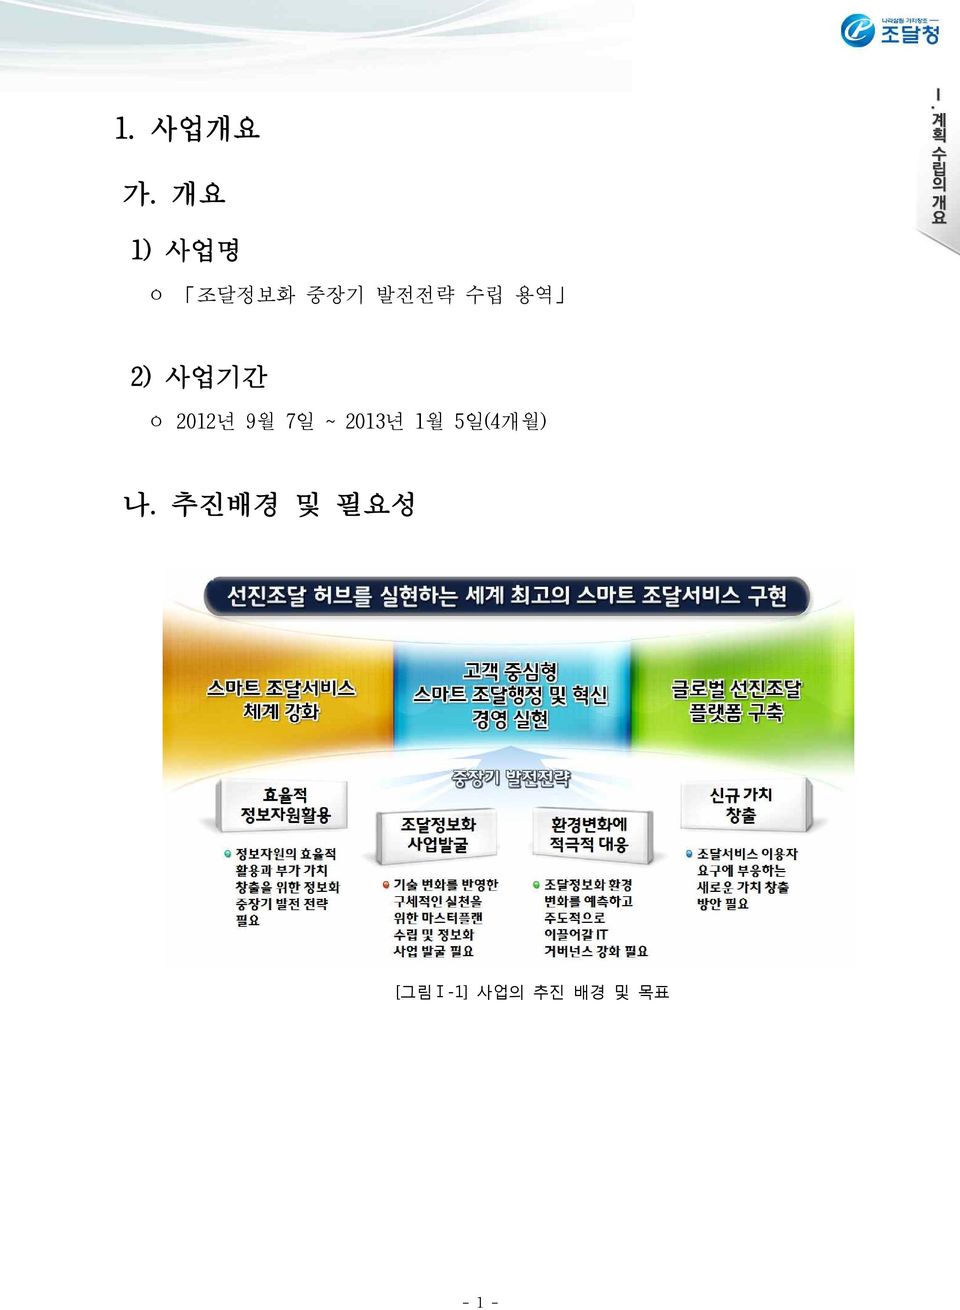 용역 2) 사업기간 ㅇ 2012년 9월 7일 ~